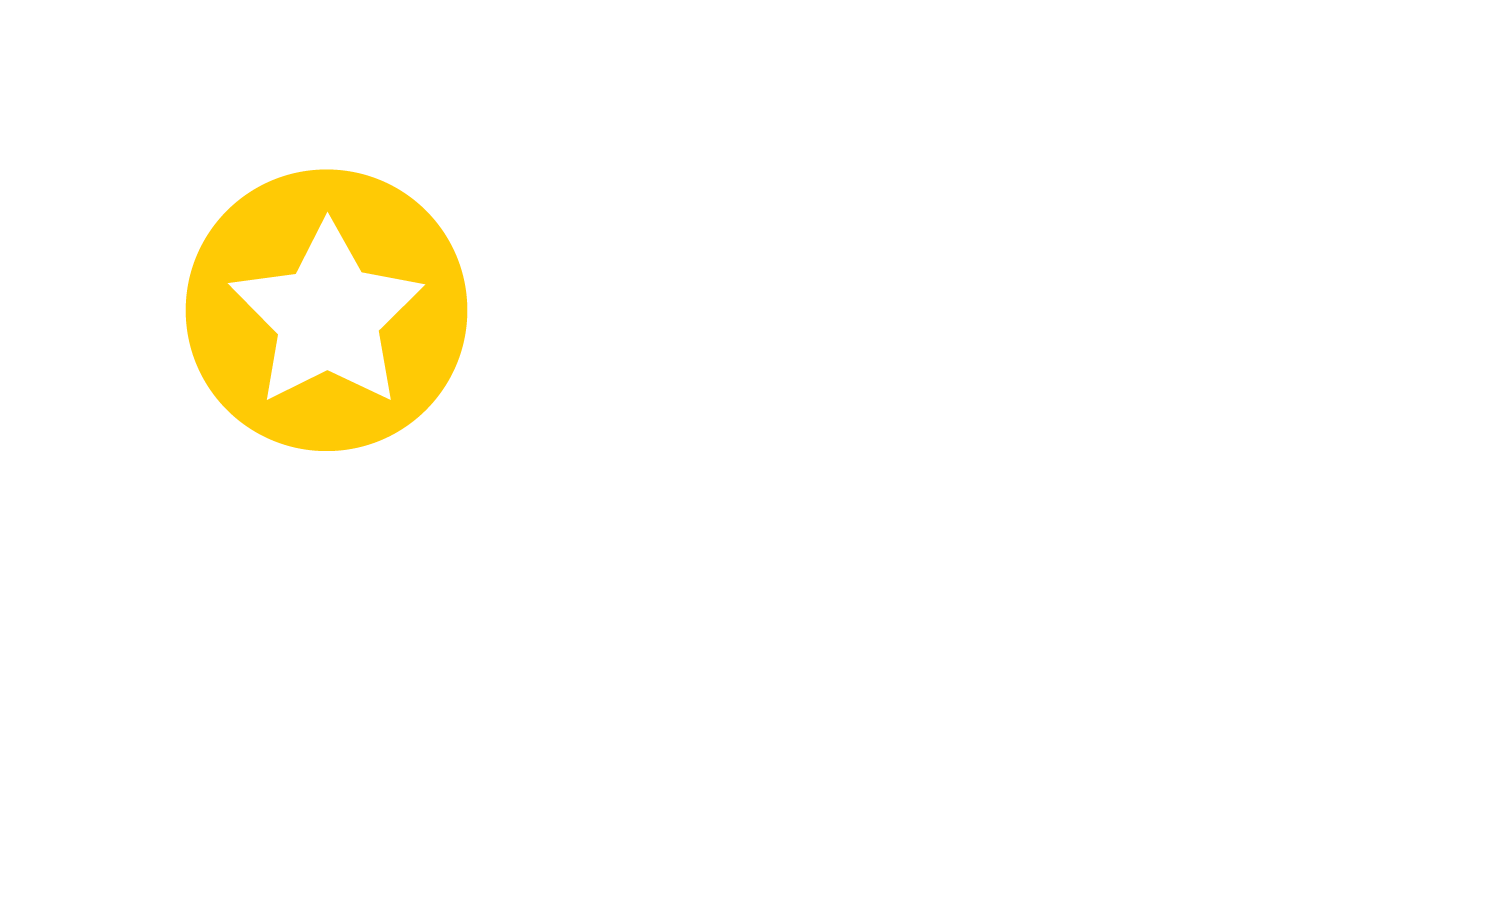 585 ЗОЛОТОЙ